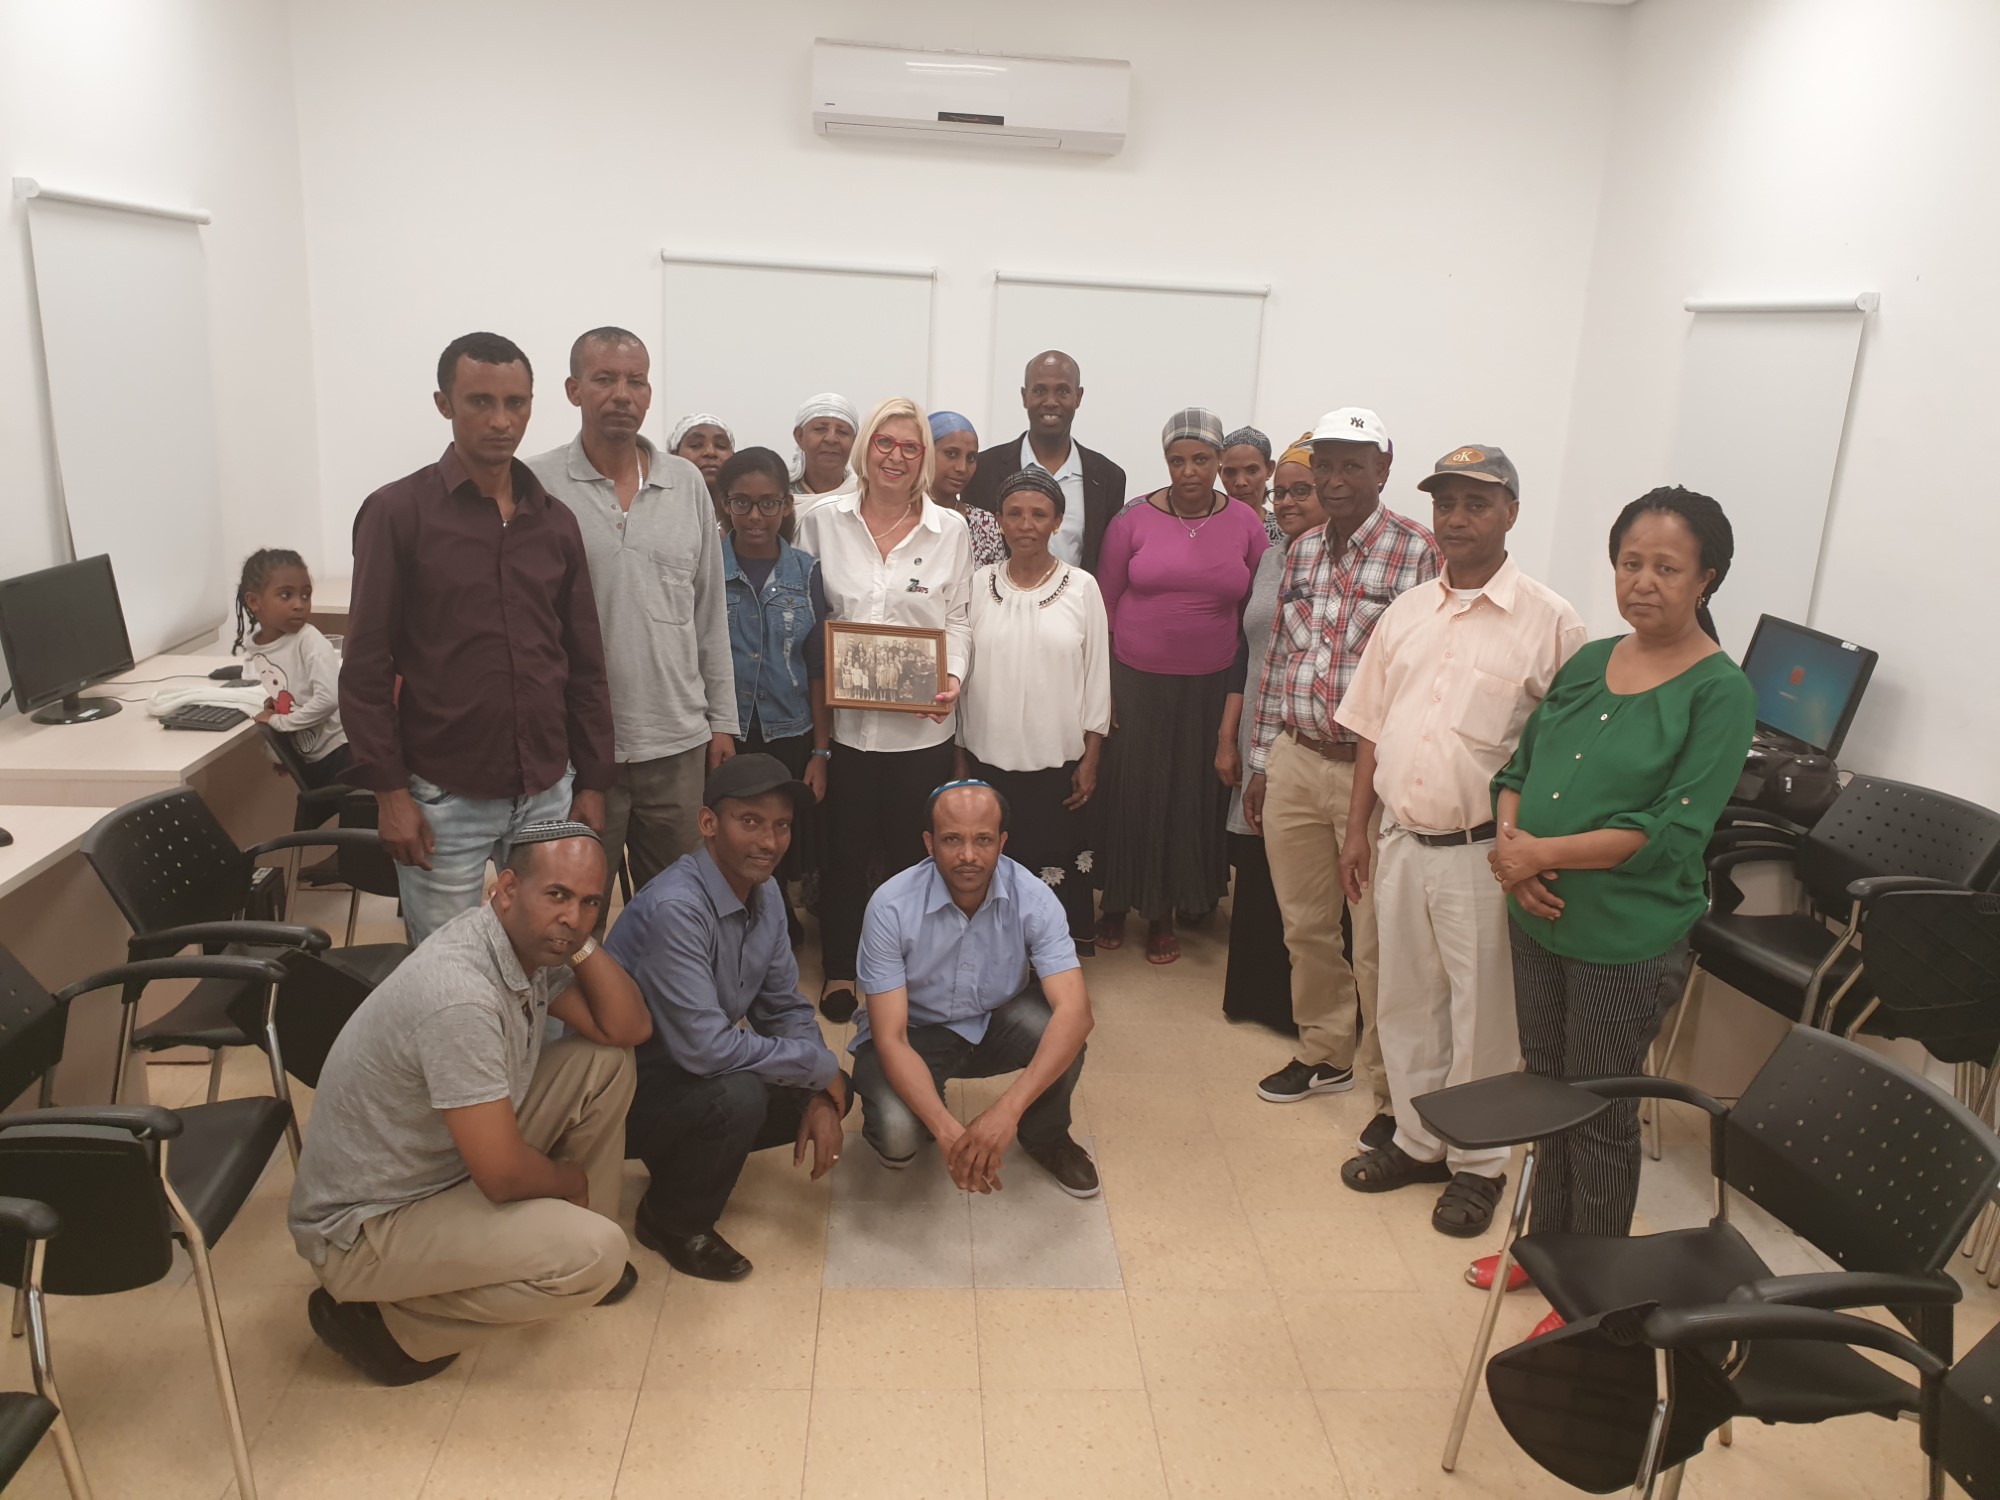 לראשונה, "זיכרון בסלון" ביום השואה – לקהילת יוצאי אתיופיה במרכז פתח תקוה